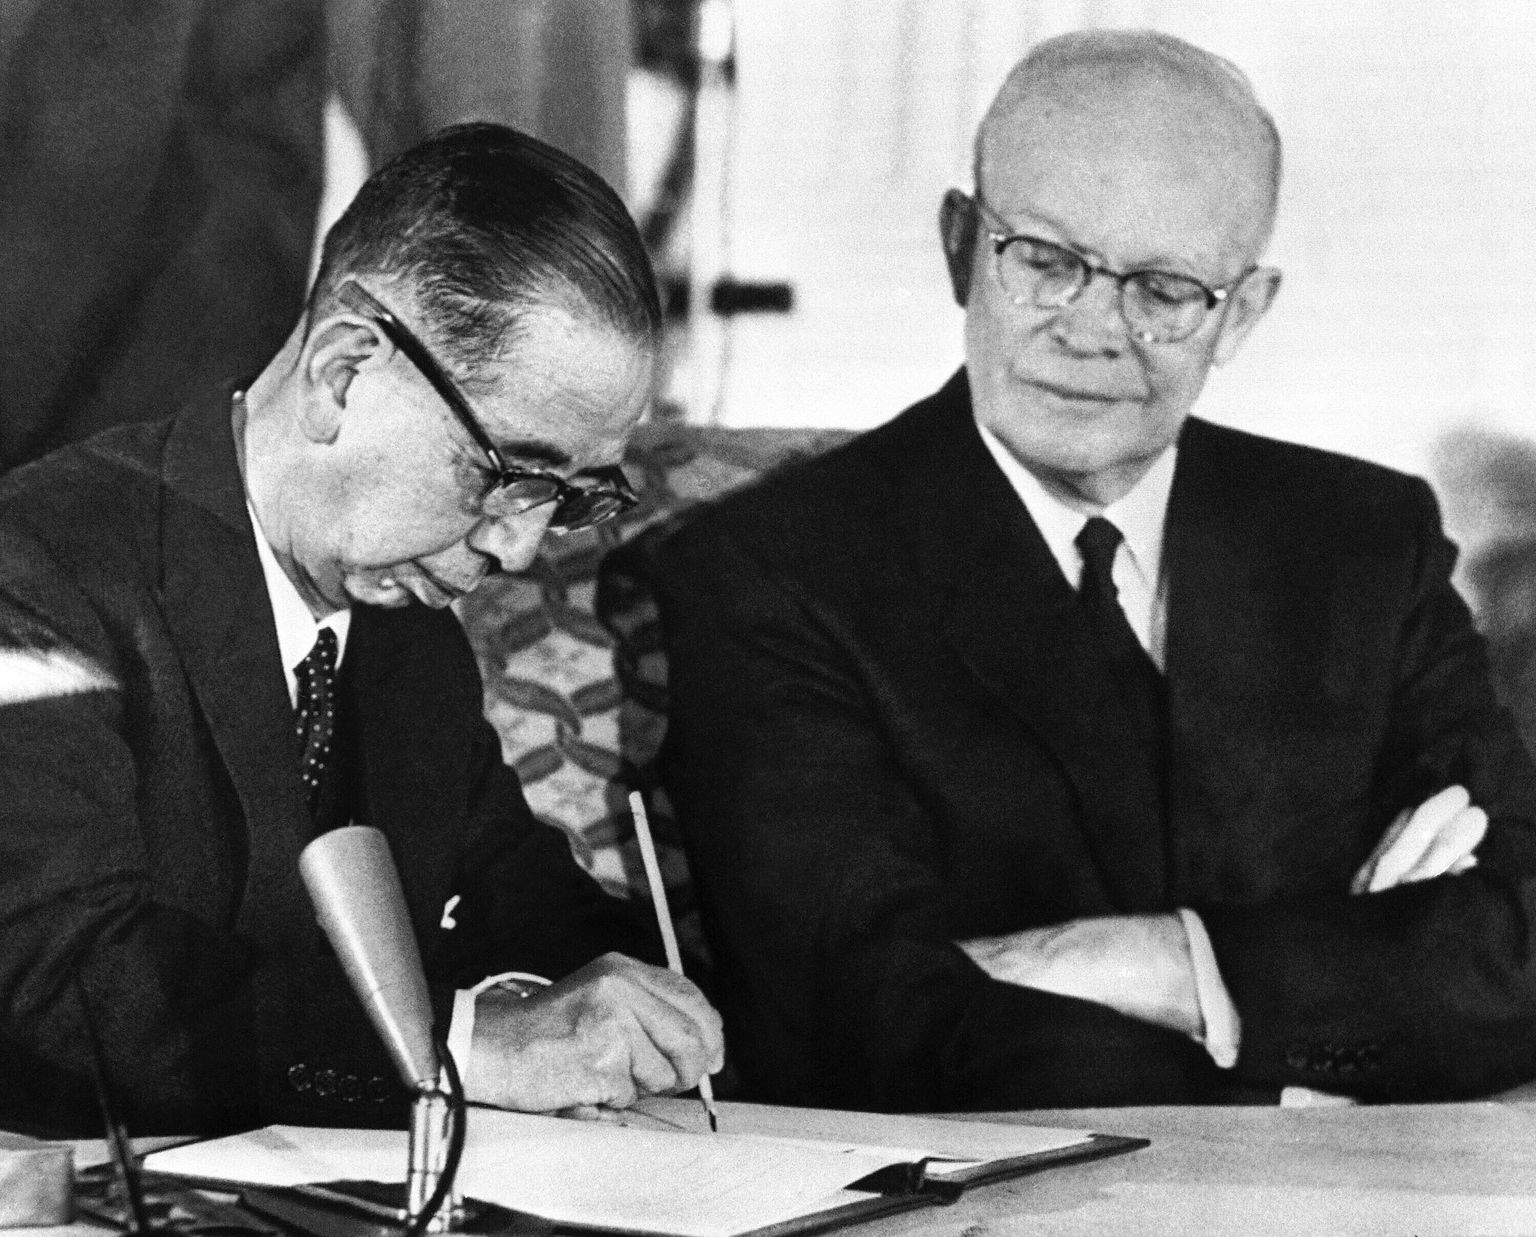 Jaapani peaminister Nobusuke Kishi allkirjastamas Jaapani-USA julgeolekupakti 19. jaanuaril 1960. aastal Washingtonis. USA president Dwight Eisenhower vaatab seda kõrvalt.